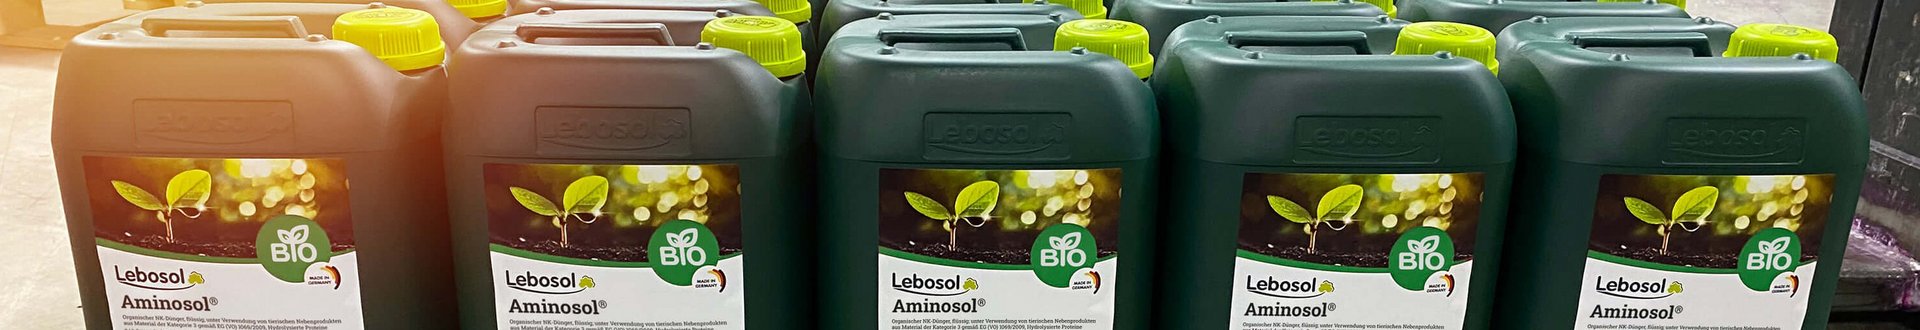 Eine Reihe von 10 Liter dunkelgrünen Kanistern Aminosol® auf einer Holzpalette